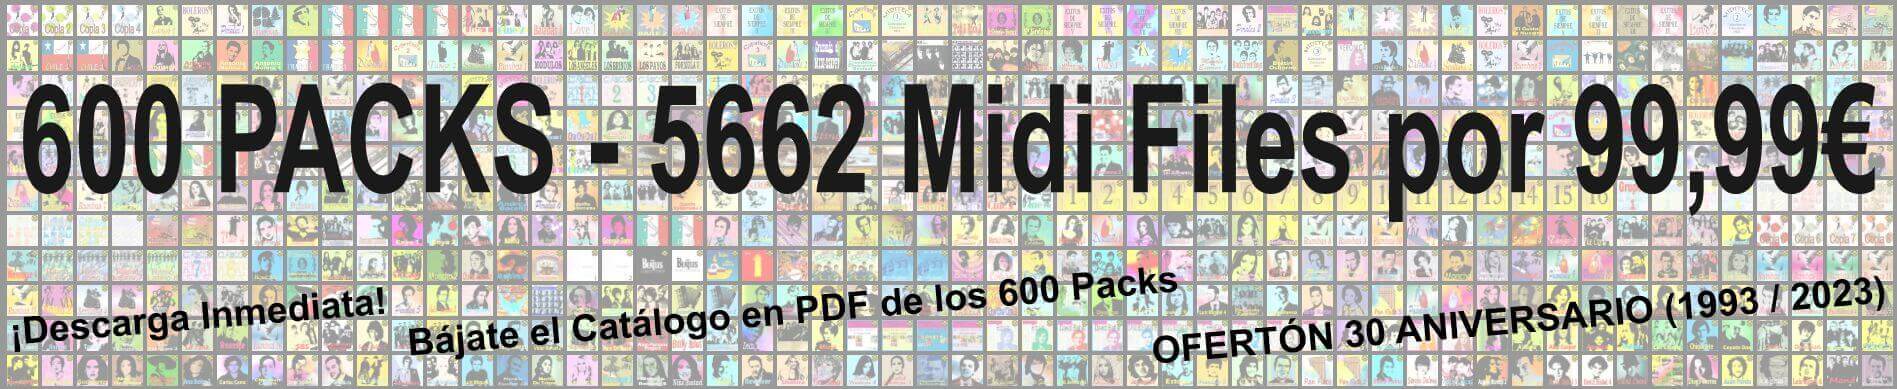 Oferton 30 Aniversario. 600 Packs - 5662 Midi Files Por 99,99 Euros